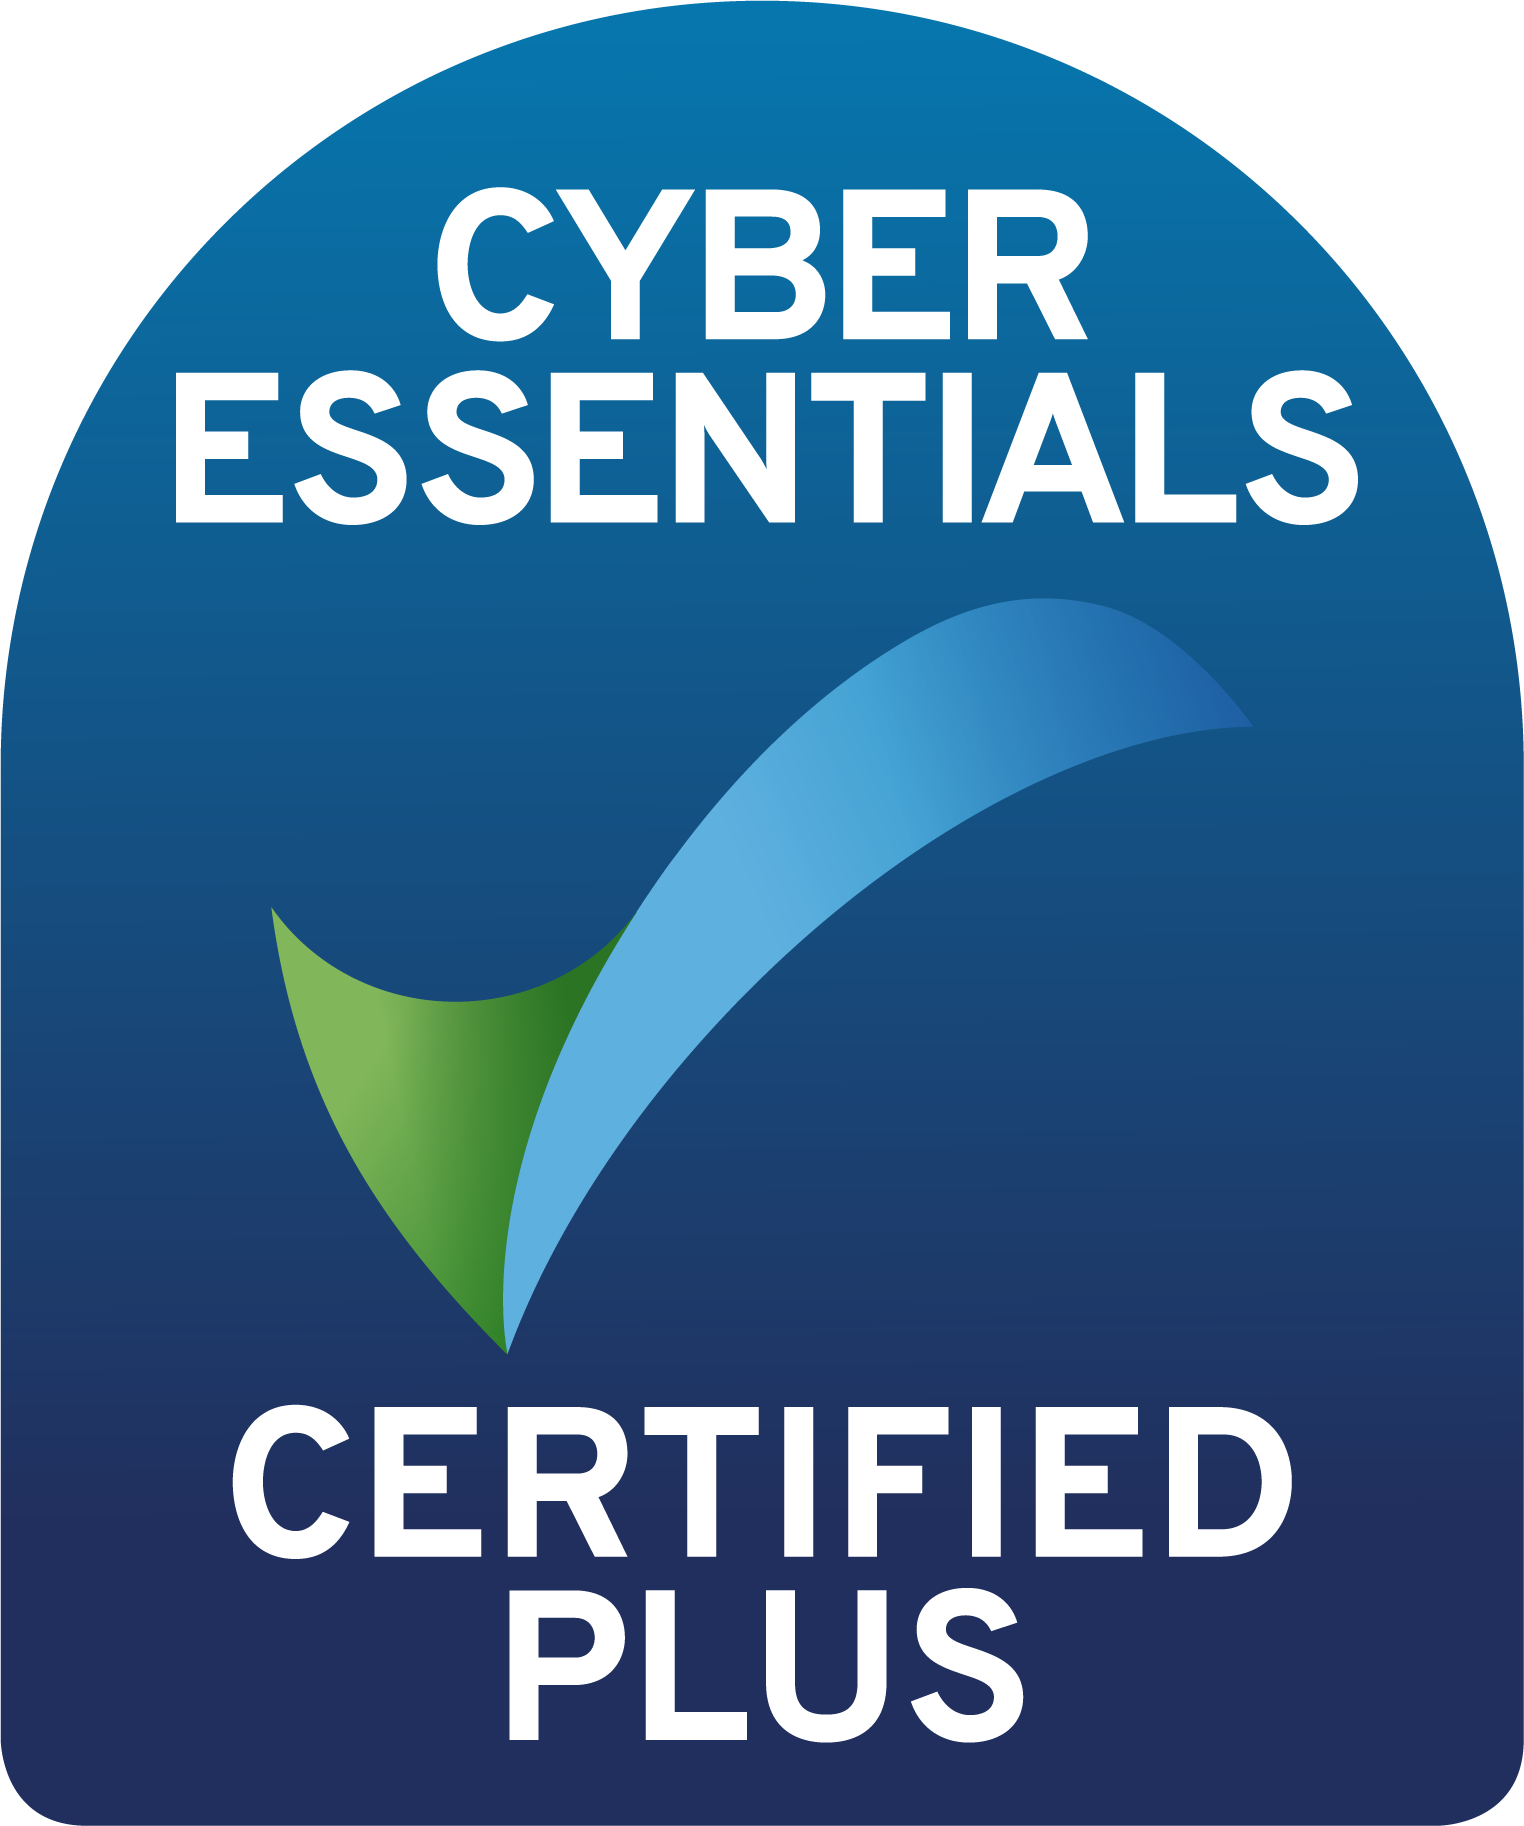 Cyber Essentials Plusnpm run build